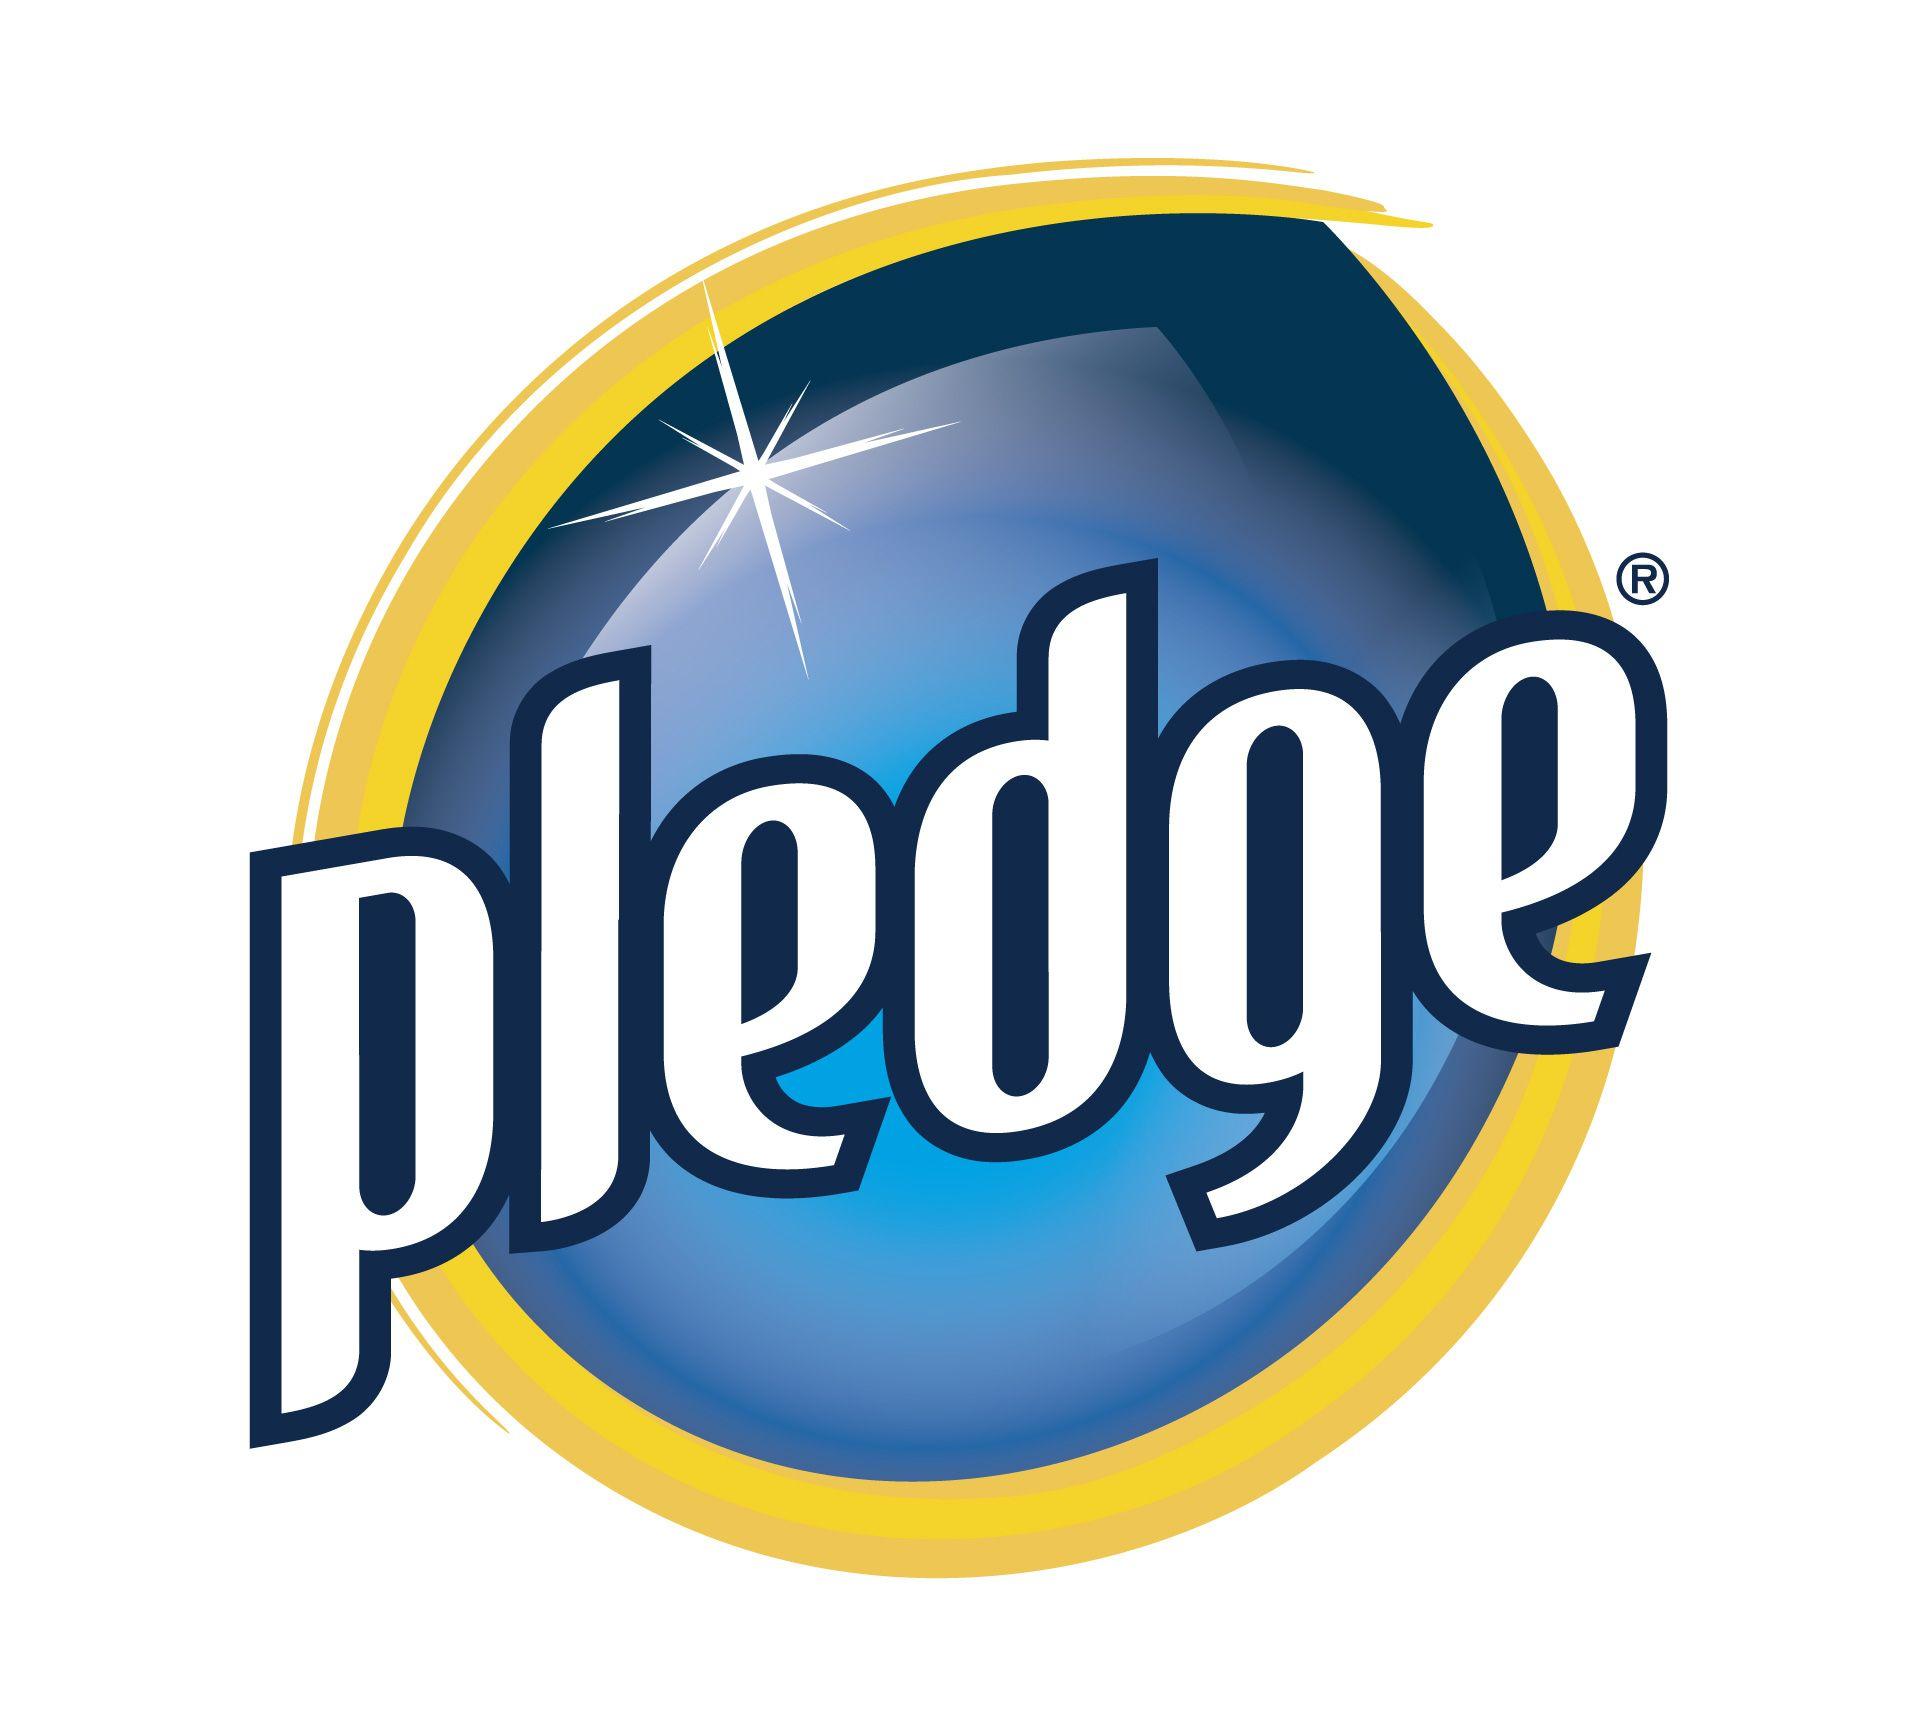 Pledge Logo - Image - Pledge logo.jpg | Logopedia | FANDOM powered by Wikia